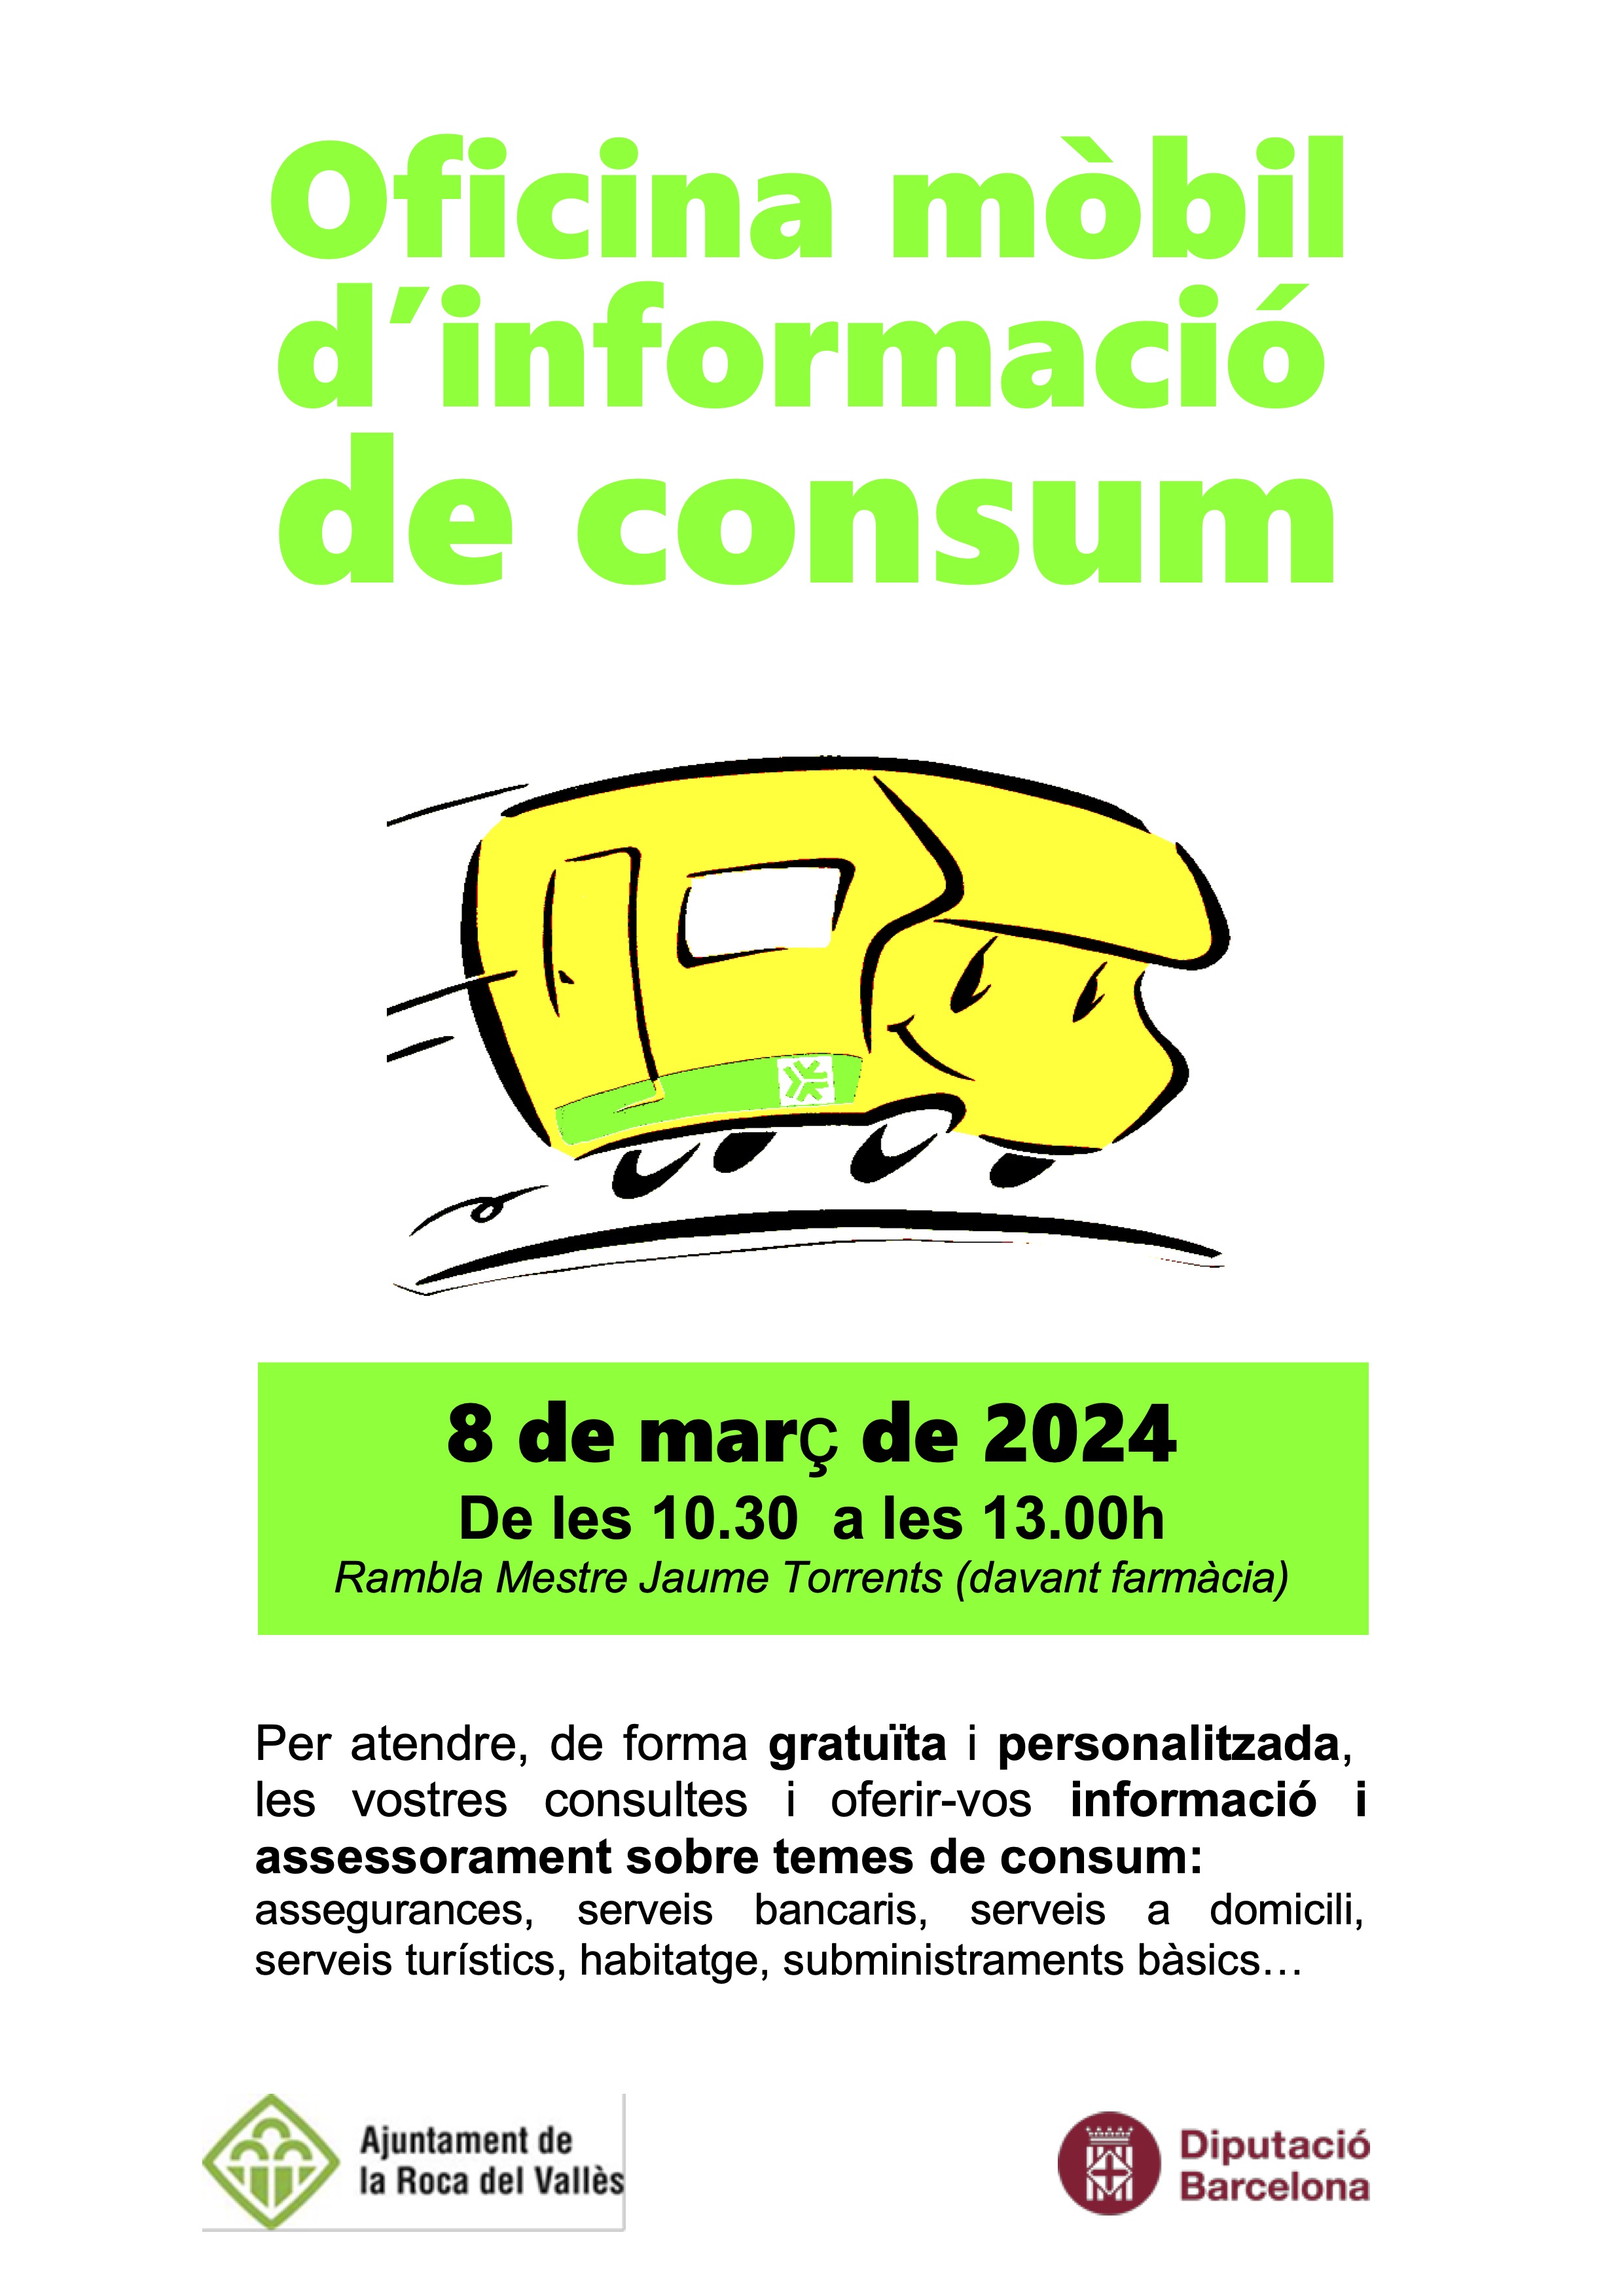 L'Oficina Mòbil d'Informació al Consumidor atendrà el 8 de març